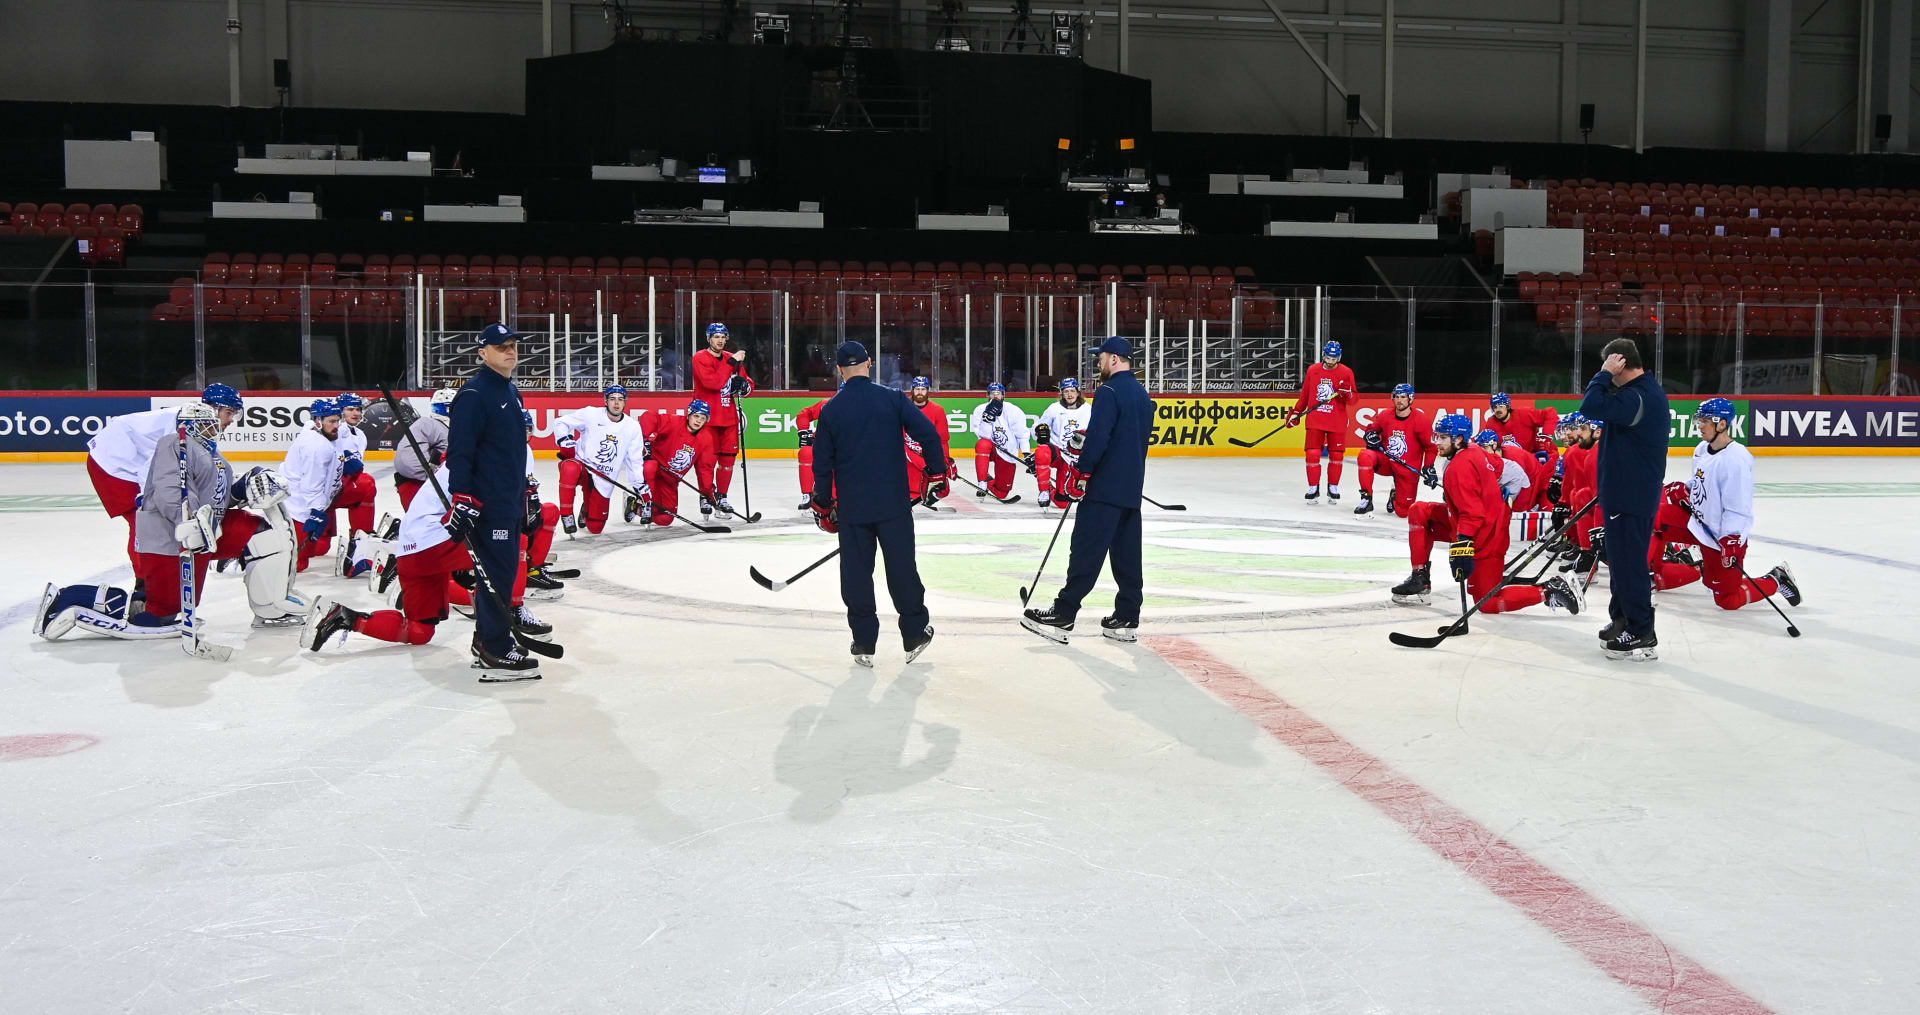 Česká hokejová reprezentace odehraje všechny zápasy ve skupině MS v rižském Olympijském sportovním centru, tedy na menším ze dvou hostitelských stadionů.